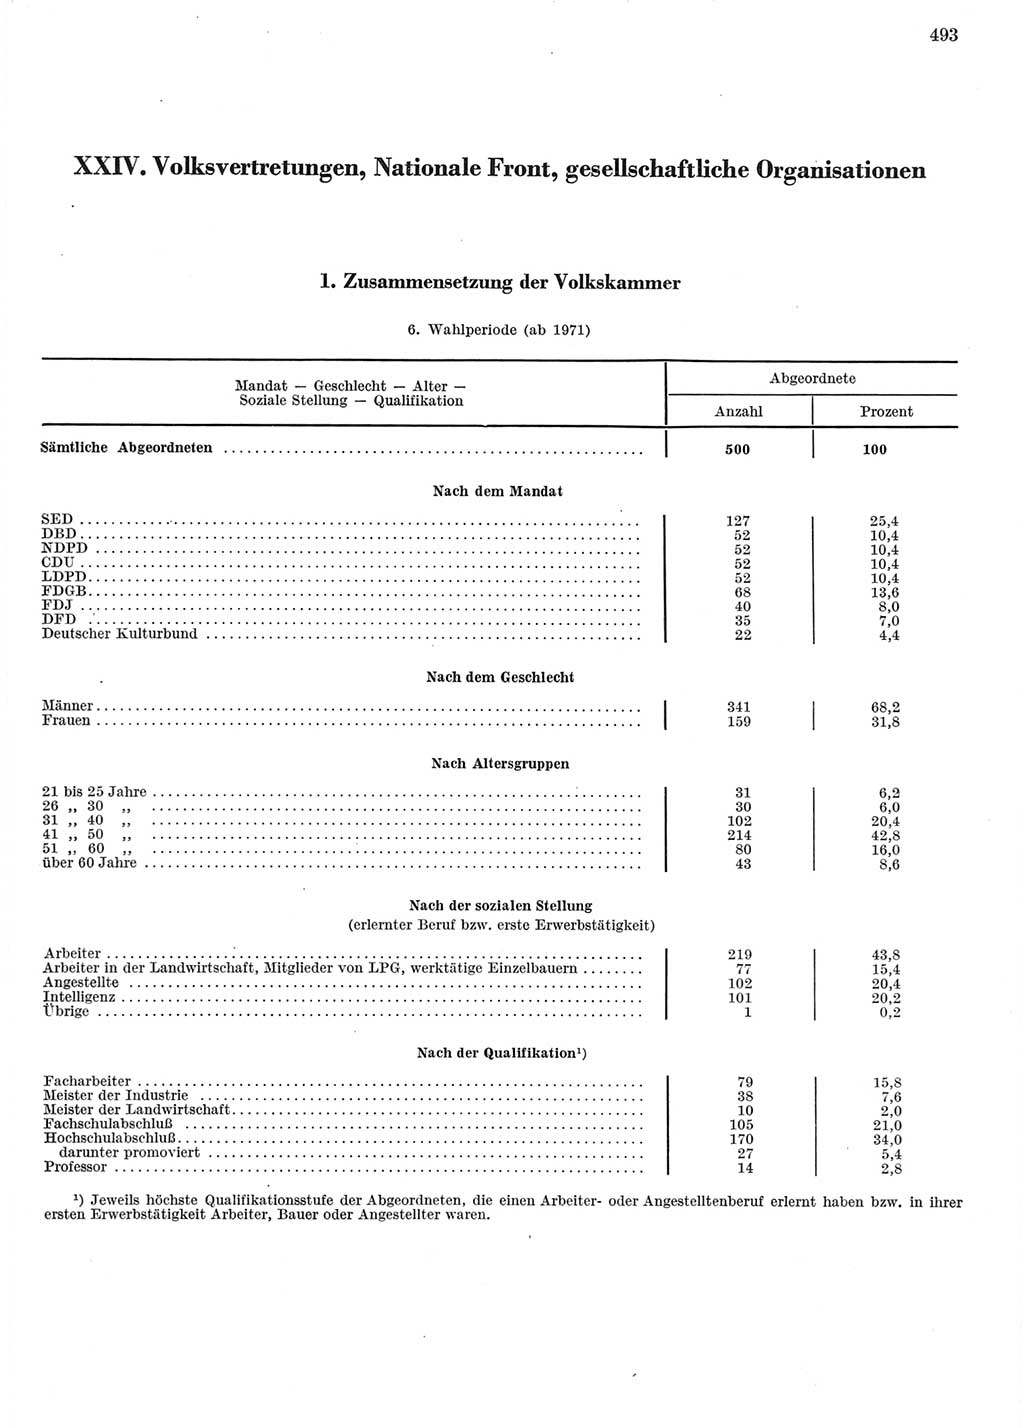 Statistisches Jahrbuch der Deutschen Demokratischen Republik (DDR) 1972, Seite 493 (Stat. Jb. DDR 1972, S. 493)